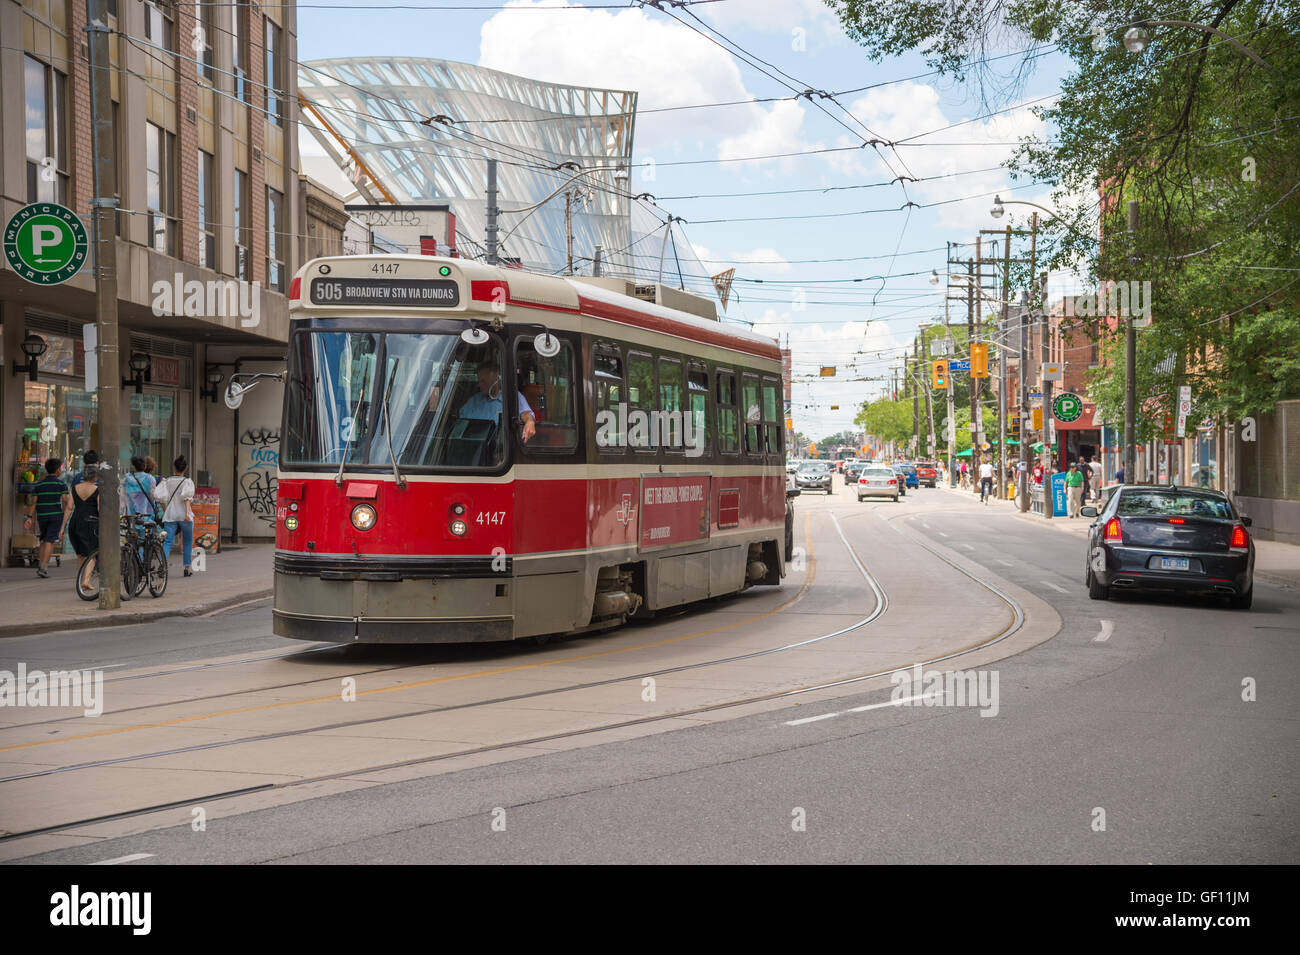 Toronto, Canada - 2 juillet 2016 : le système de tramways de Toronto est exploité par la Toronto Transit Commission (TTC). Banque D'Images